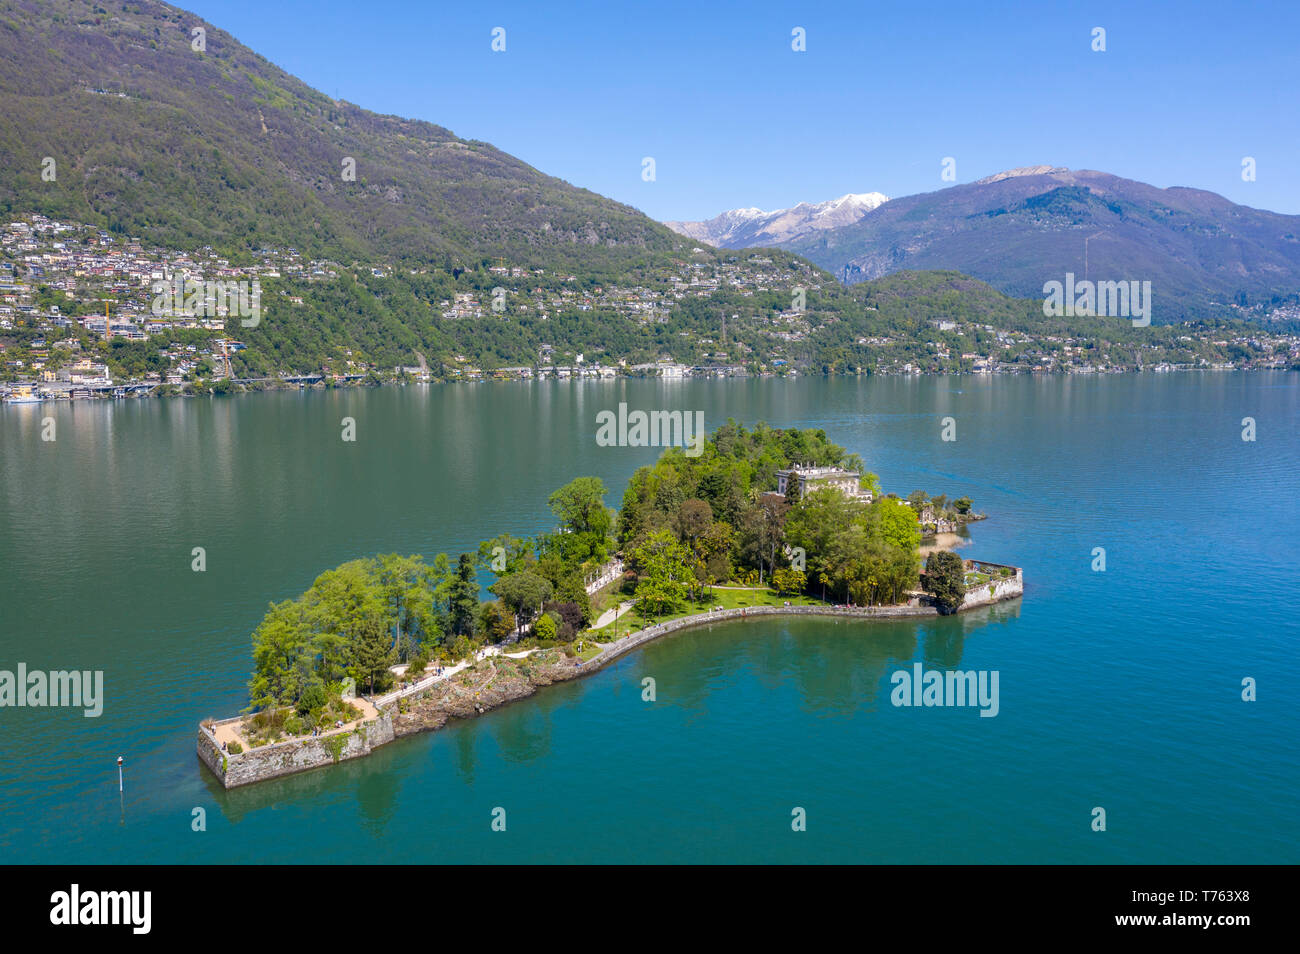 Luftaufnahme der Brissago Inseln in der Nähe von Ascona, auf den nördlichen Teil des Lago Maggiore. Kanton Tessin, Schweiz. Stockfoto